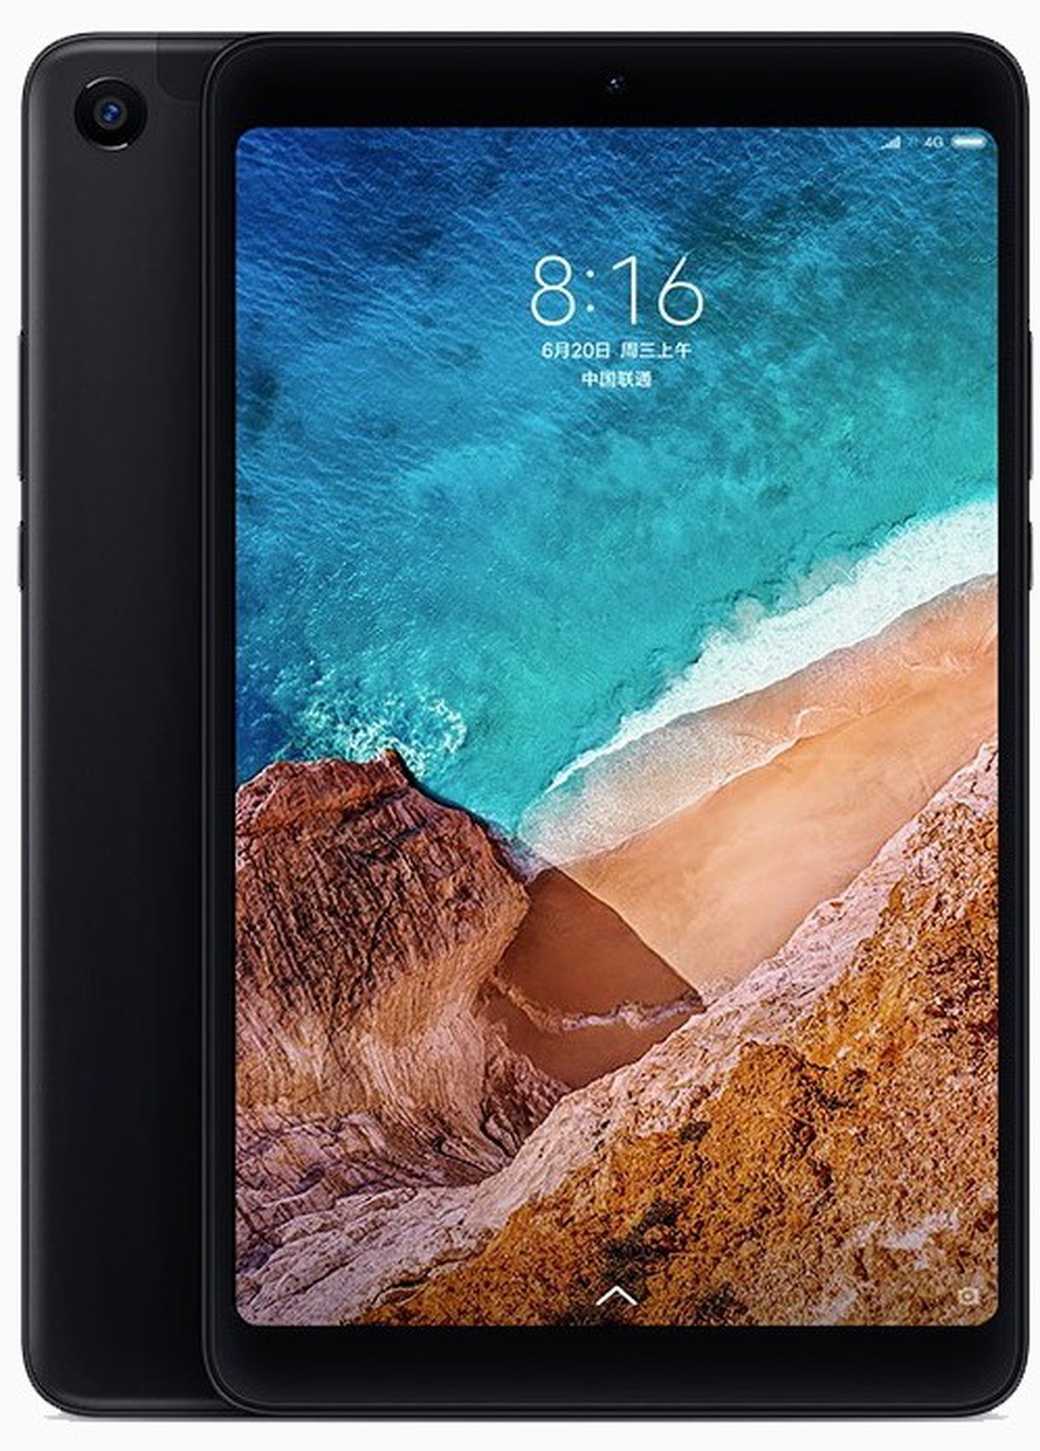 Xiaomi MiPad 4 Plus - короткий но максимально информативный обзор Для большего удобства добавлены характеристики отзывы и видео